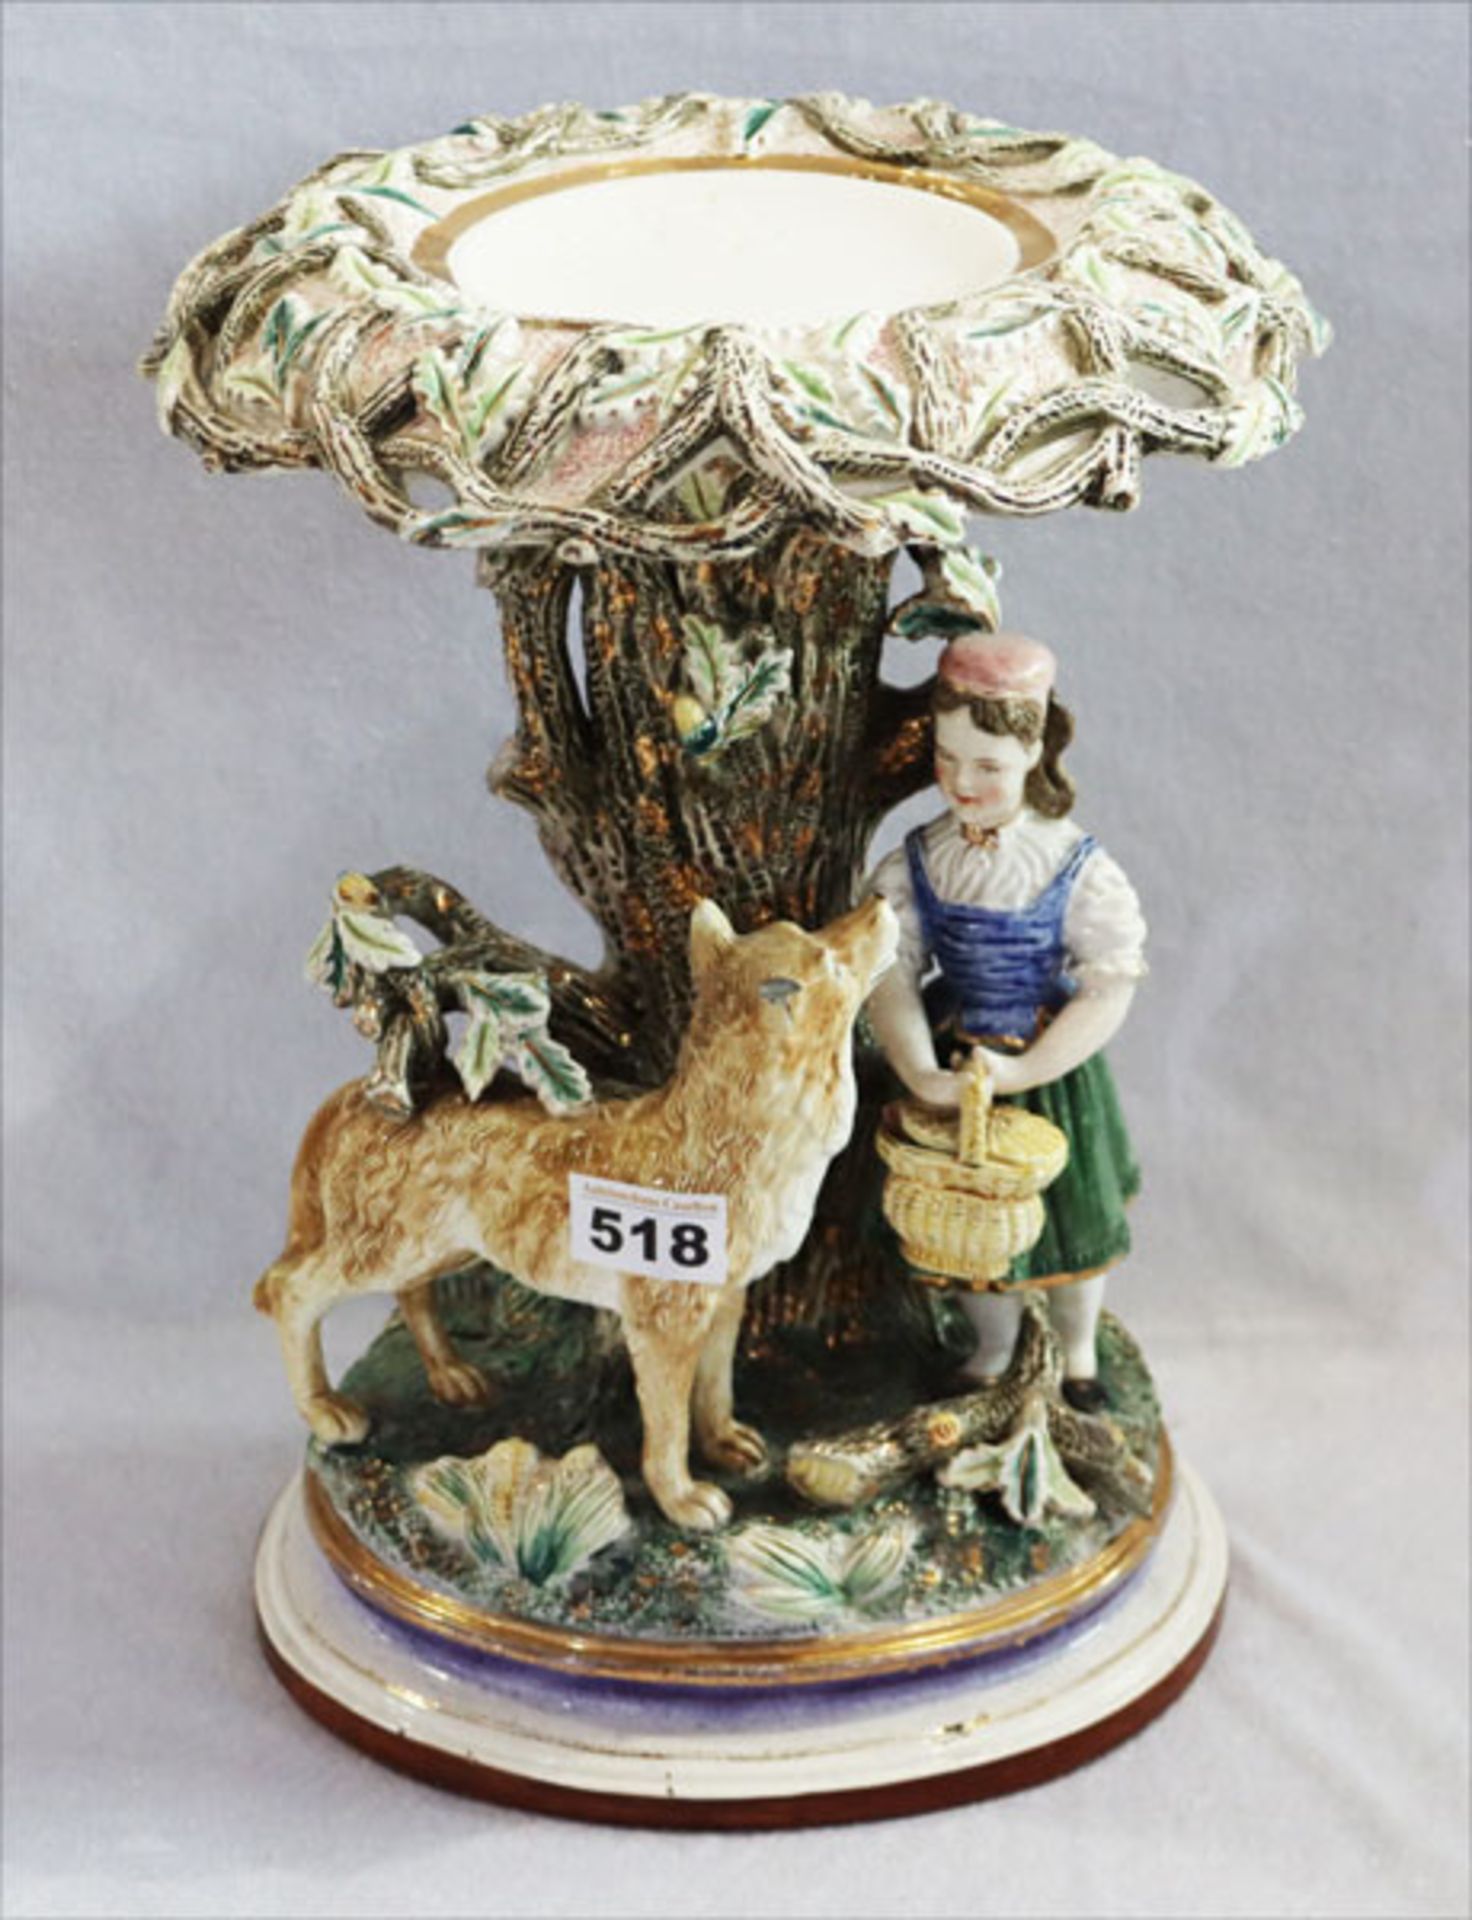 Porzellan Objekt 'Rotkäppchen mit Wolf', farbig glasiert, beschädigt und bestossen, H 35,5 cm, D